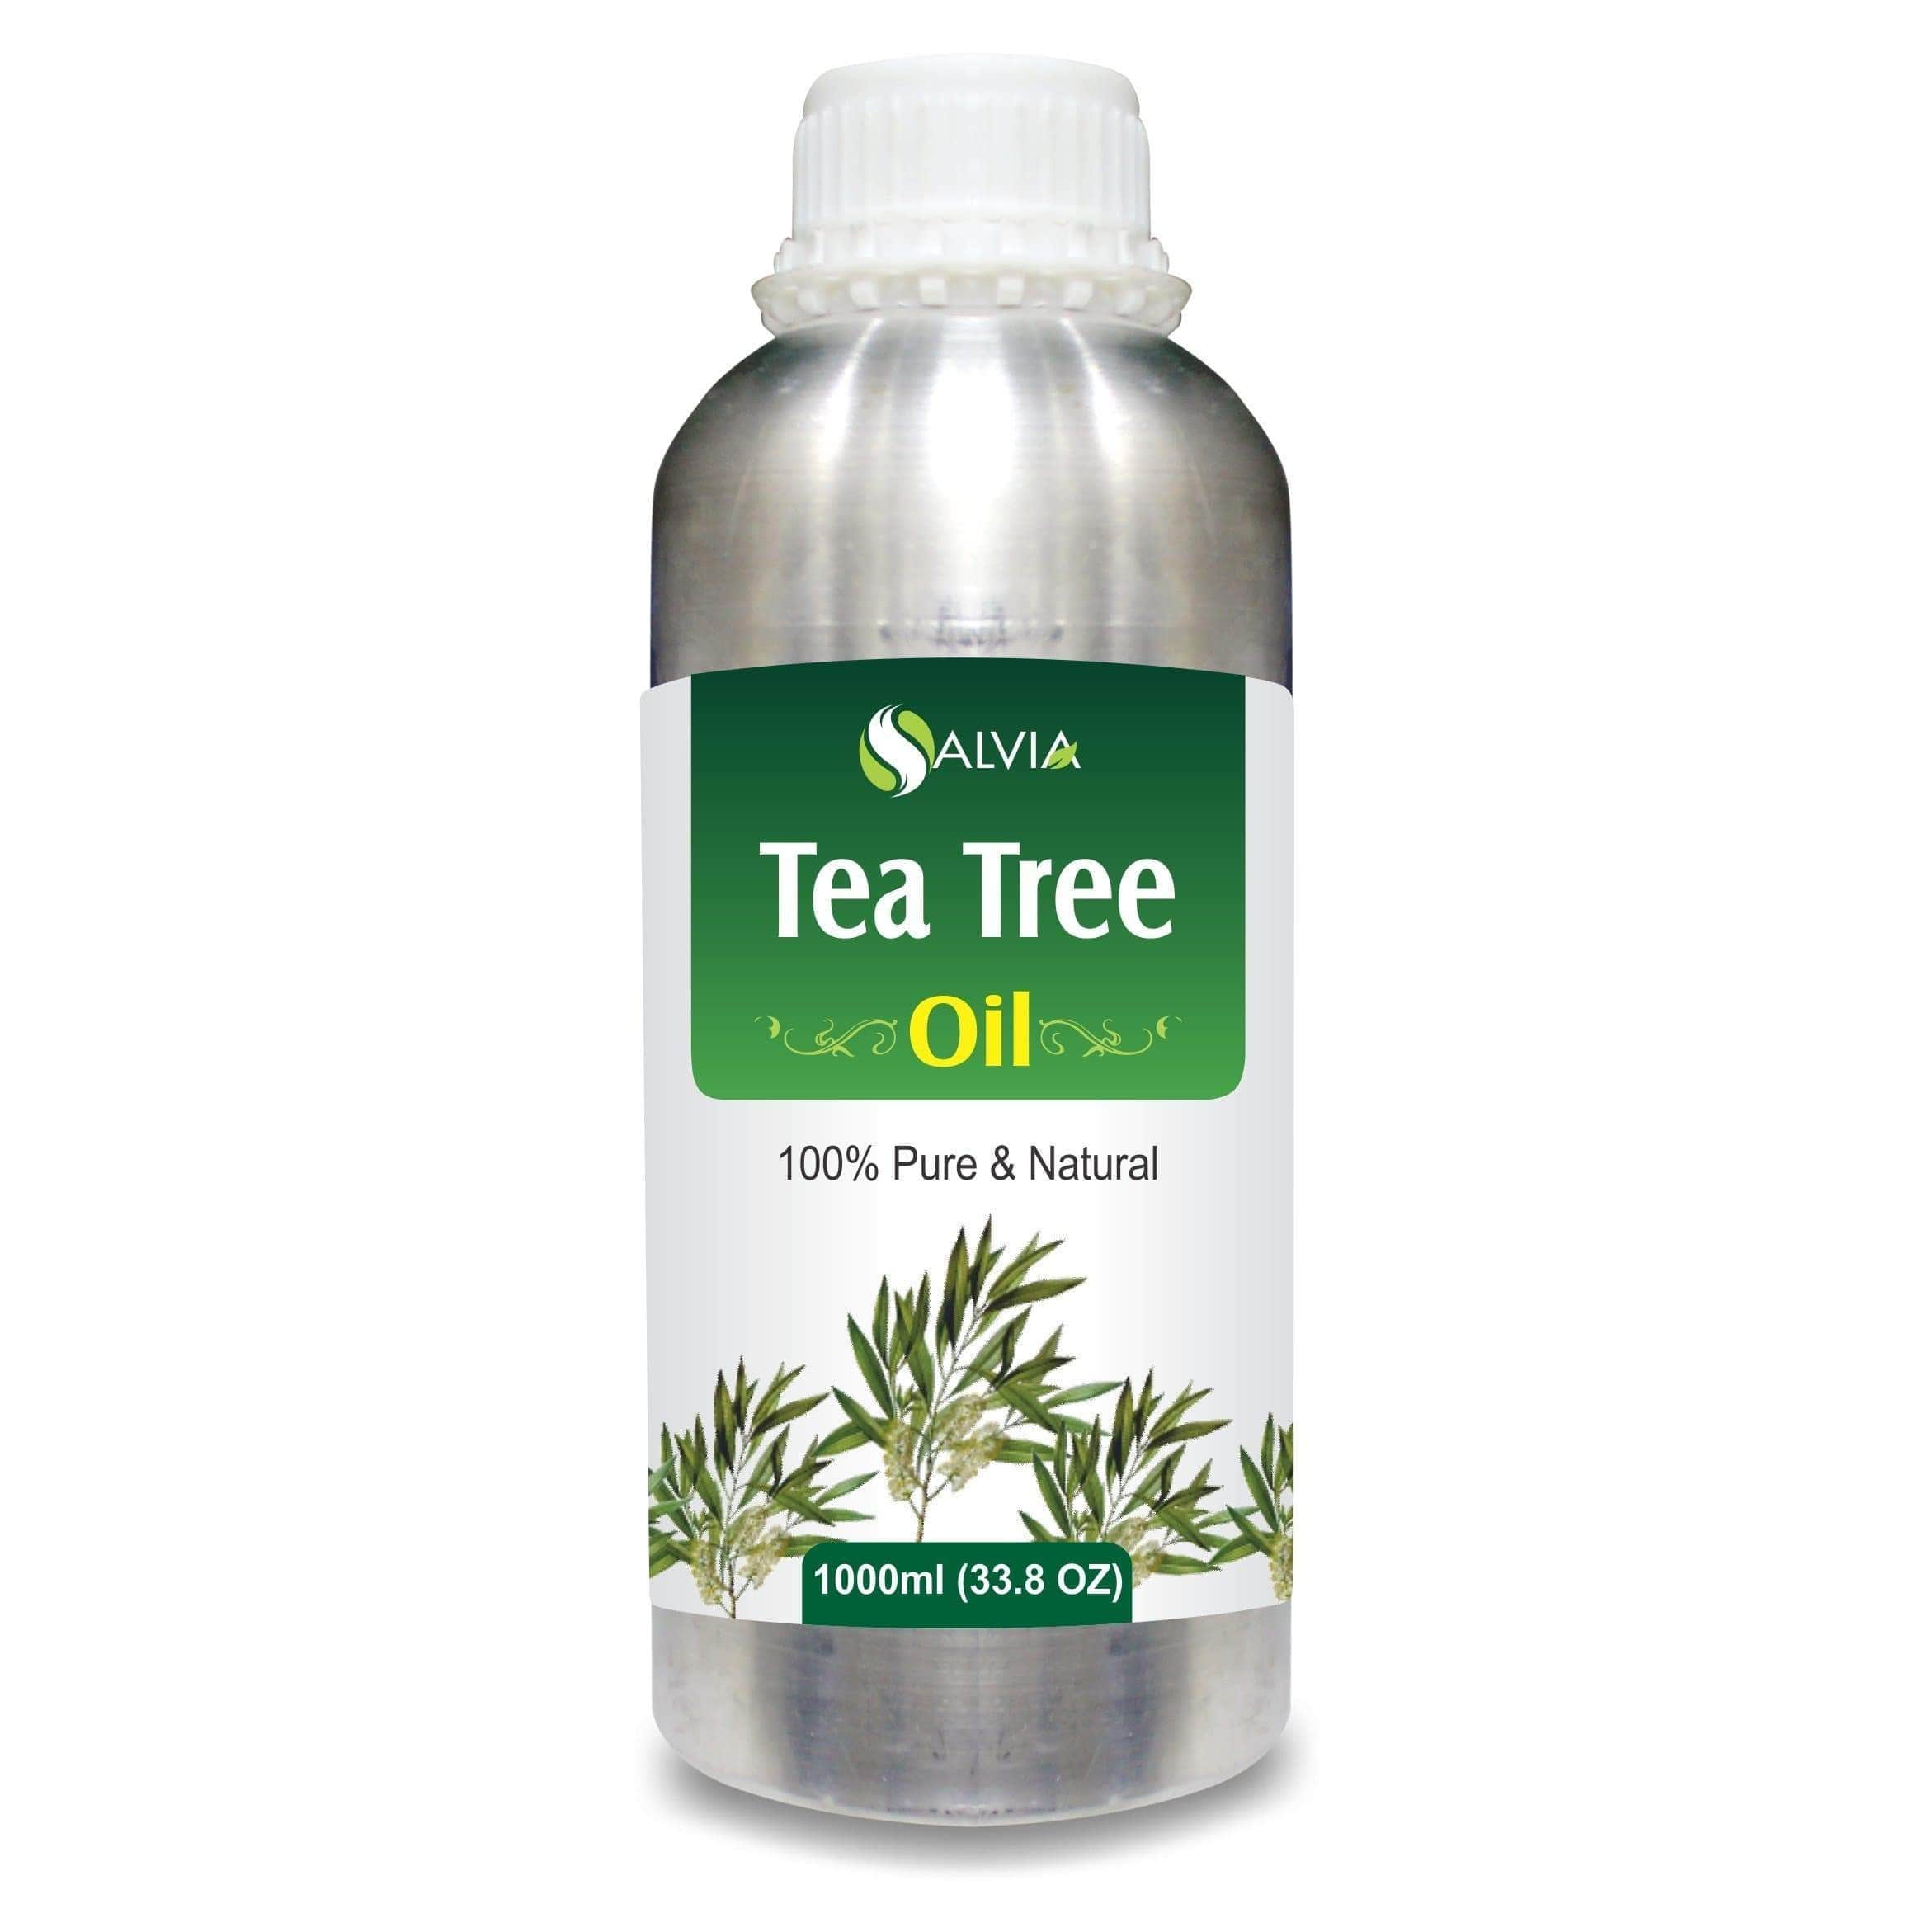 tea tree oil pimple